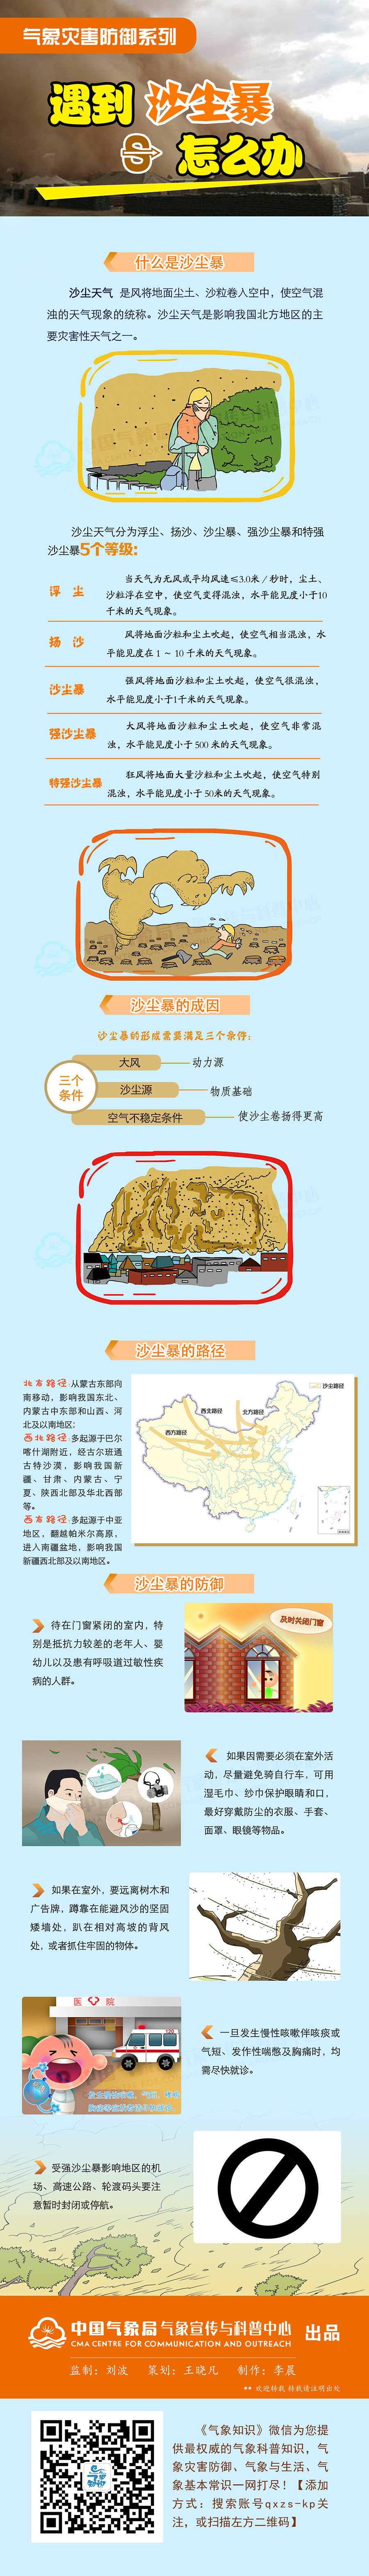 北京发布沙尘暴黄色预警 四季青站PM10浓度超3000